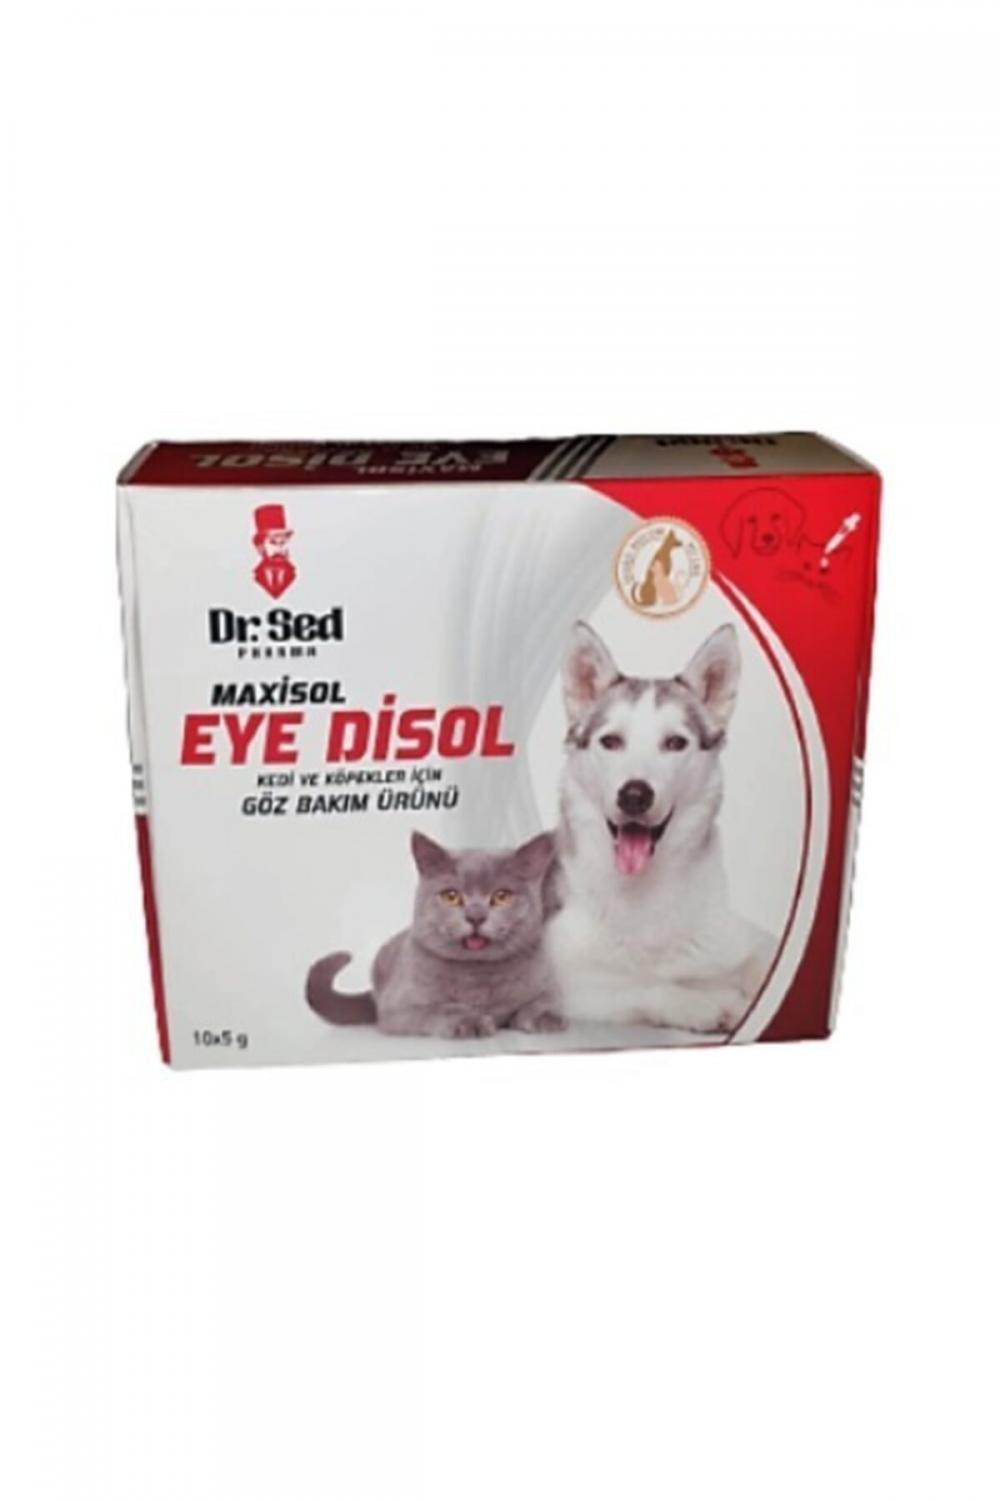 Dr Sed Eye Disol Kedi Ve Köpekler Için Göz Bakım Ürünü Bileşimi Dr sed